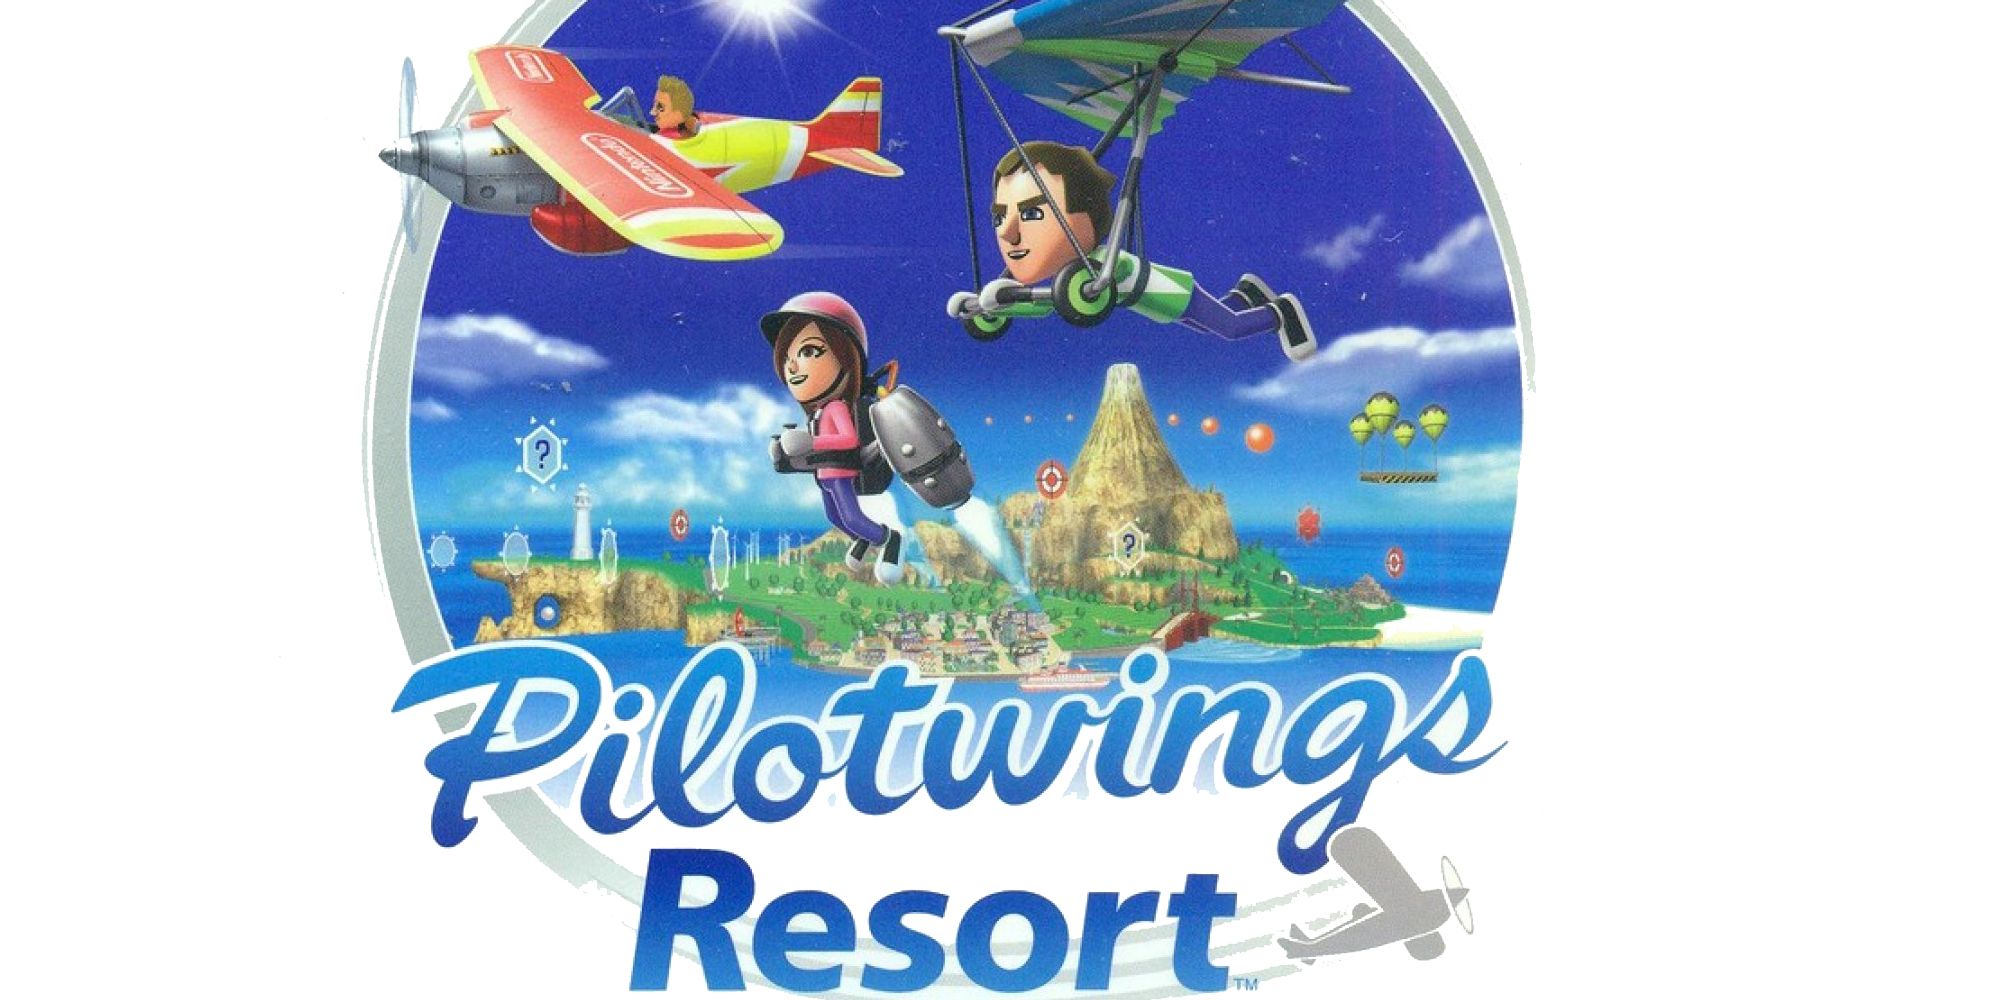 Pilotwings resort 3ds